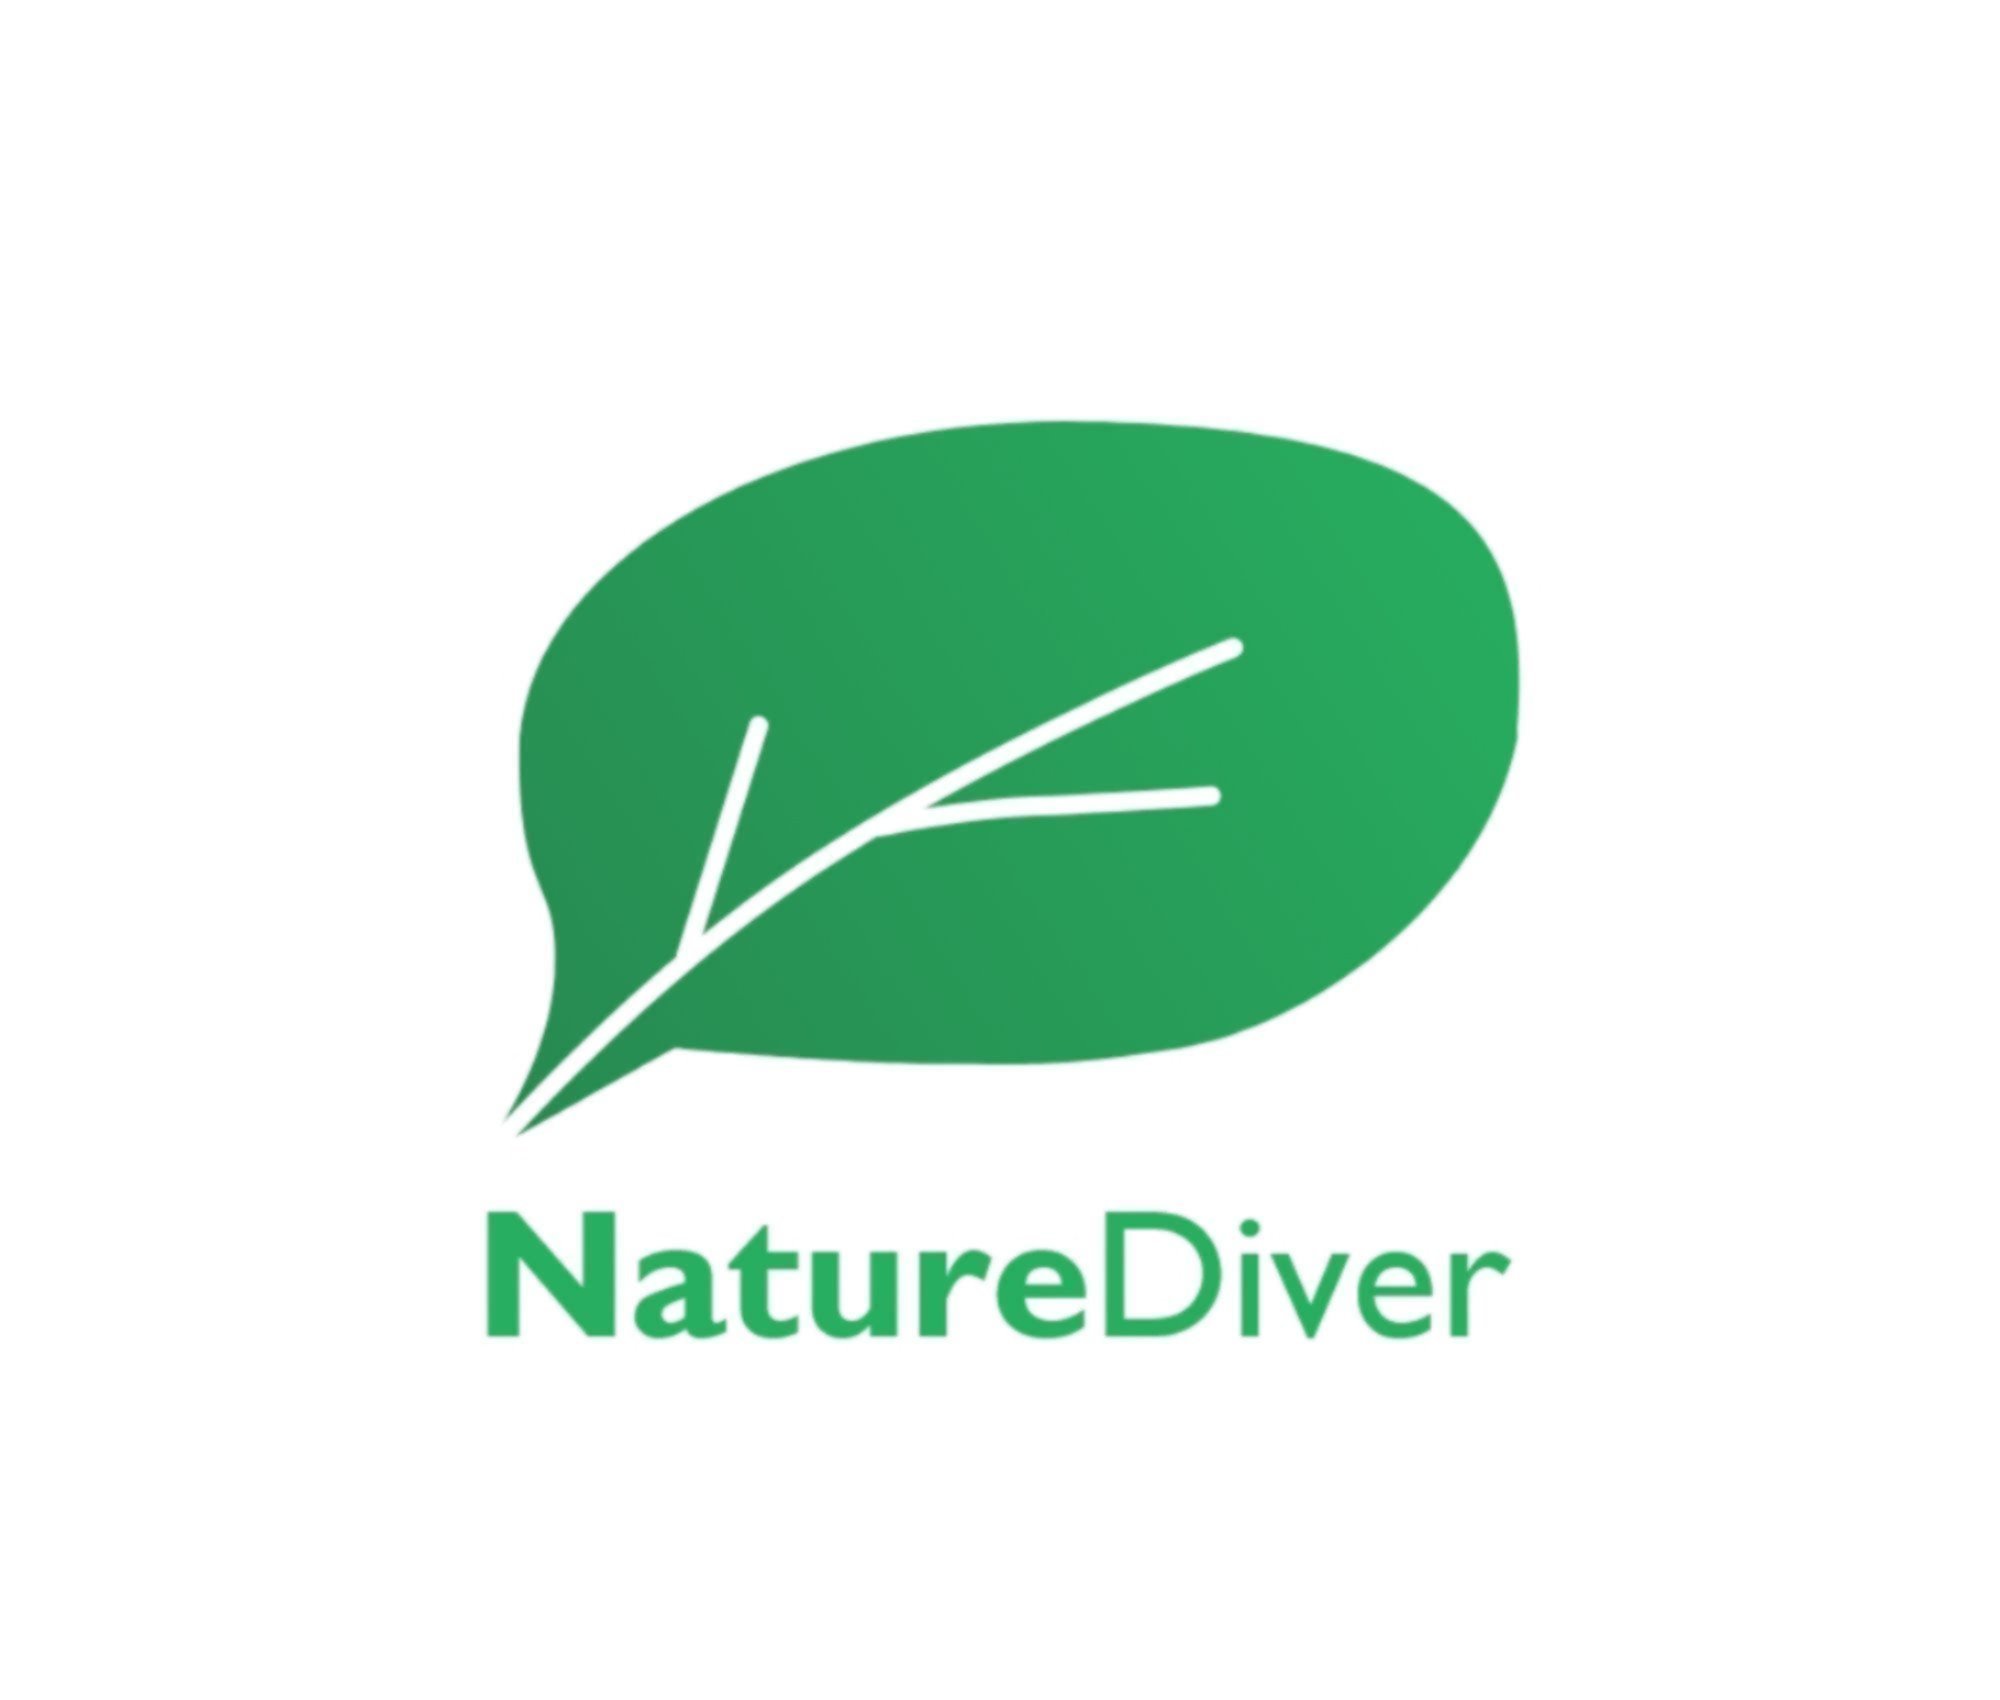 NatureDiver